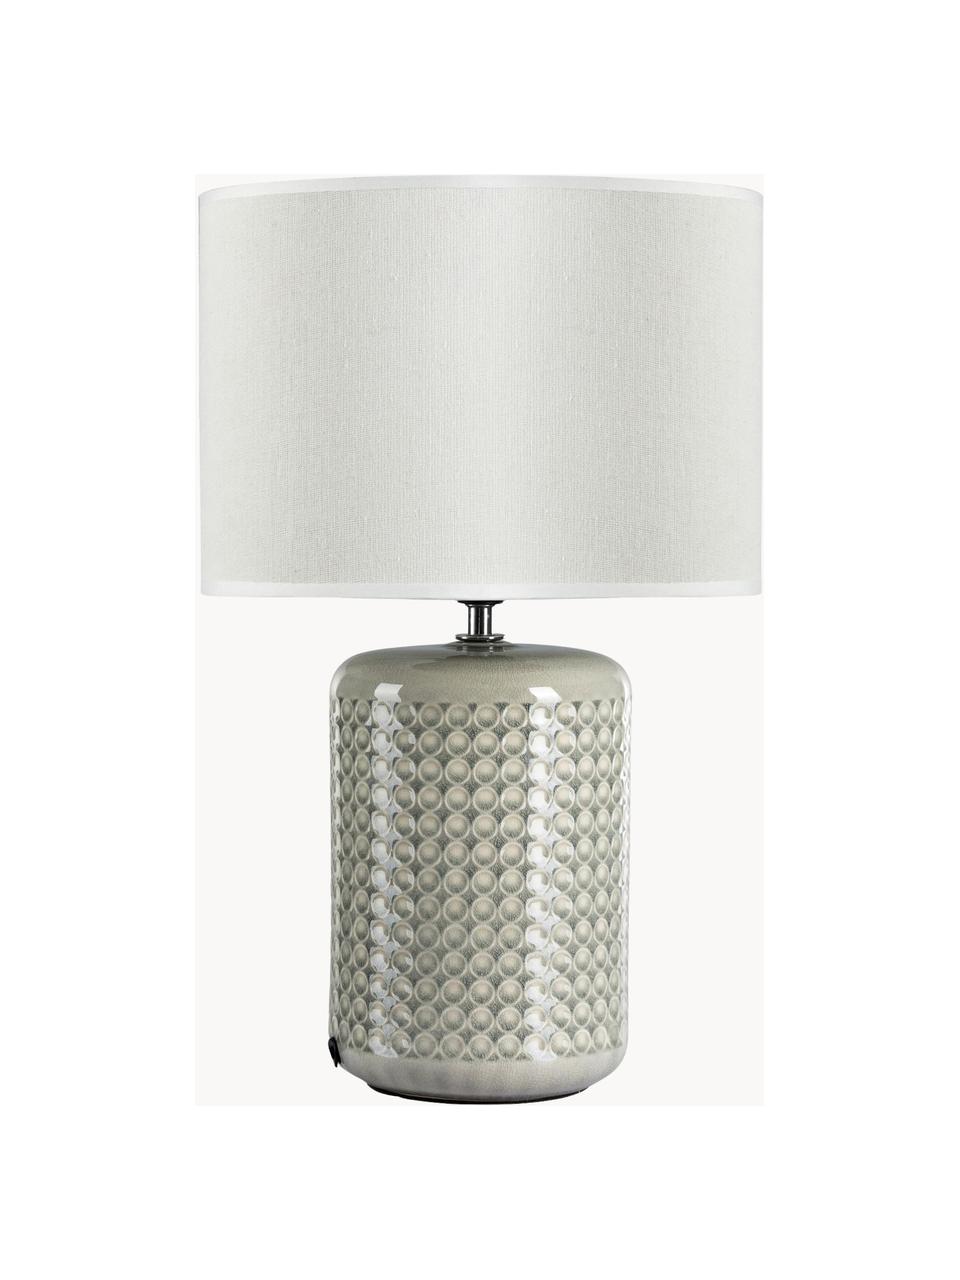 Tischlampe Go for Glow, Lampenschirm: Leinen, Lampenfuß: Keramik, Greige, Weiß, Ø 25 x H 40 cm